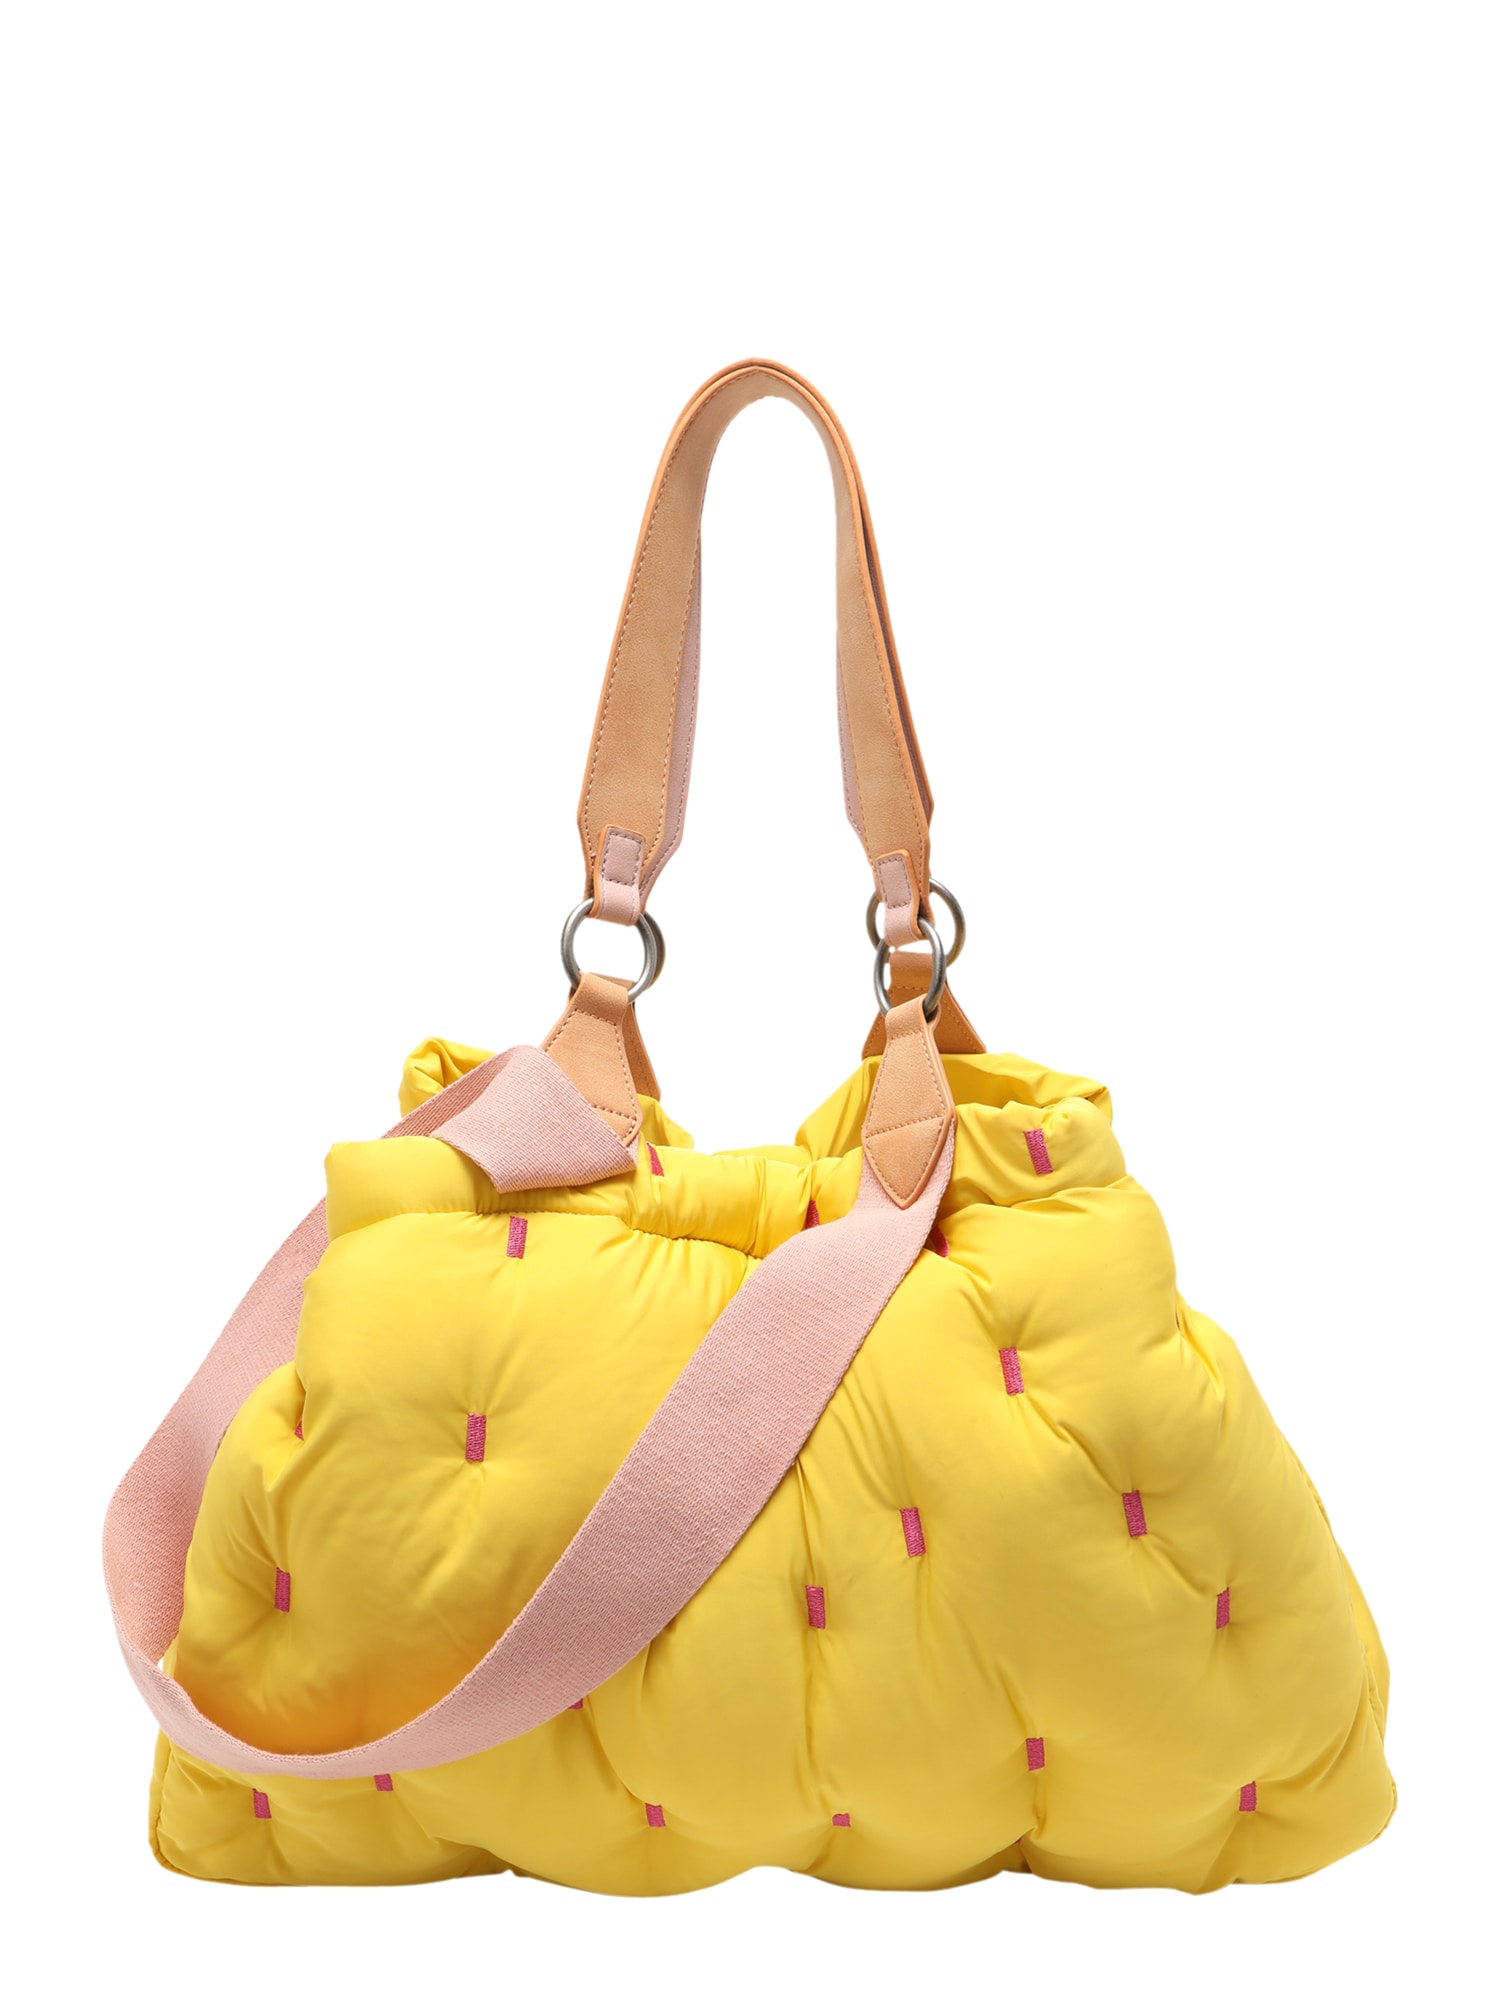 Fritzi aus Preußen Pirkinių krepšys 'Izzy' šviesiai ruda / geltona / rožinė / ryškiai rožinė spalva